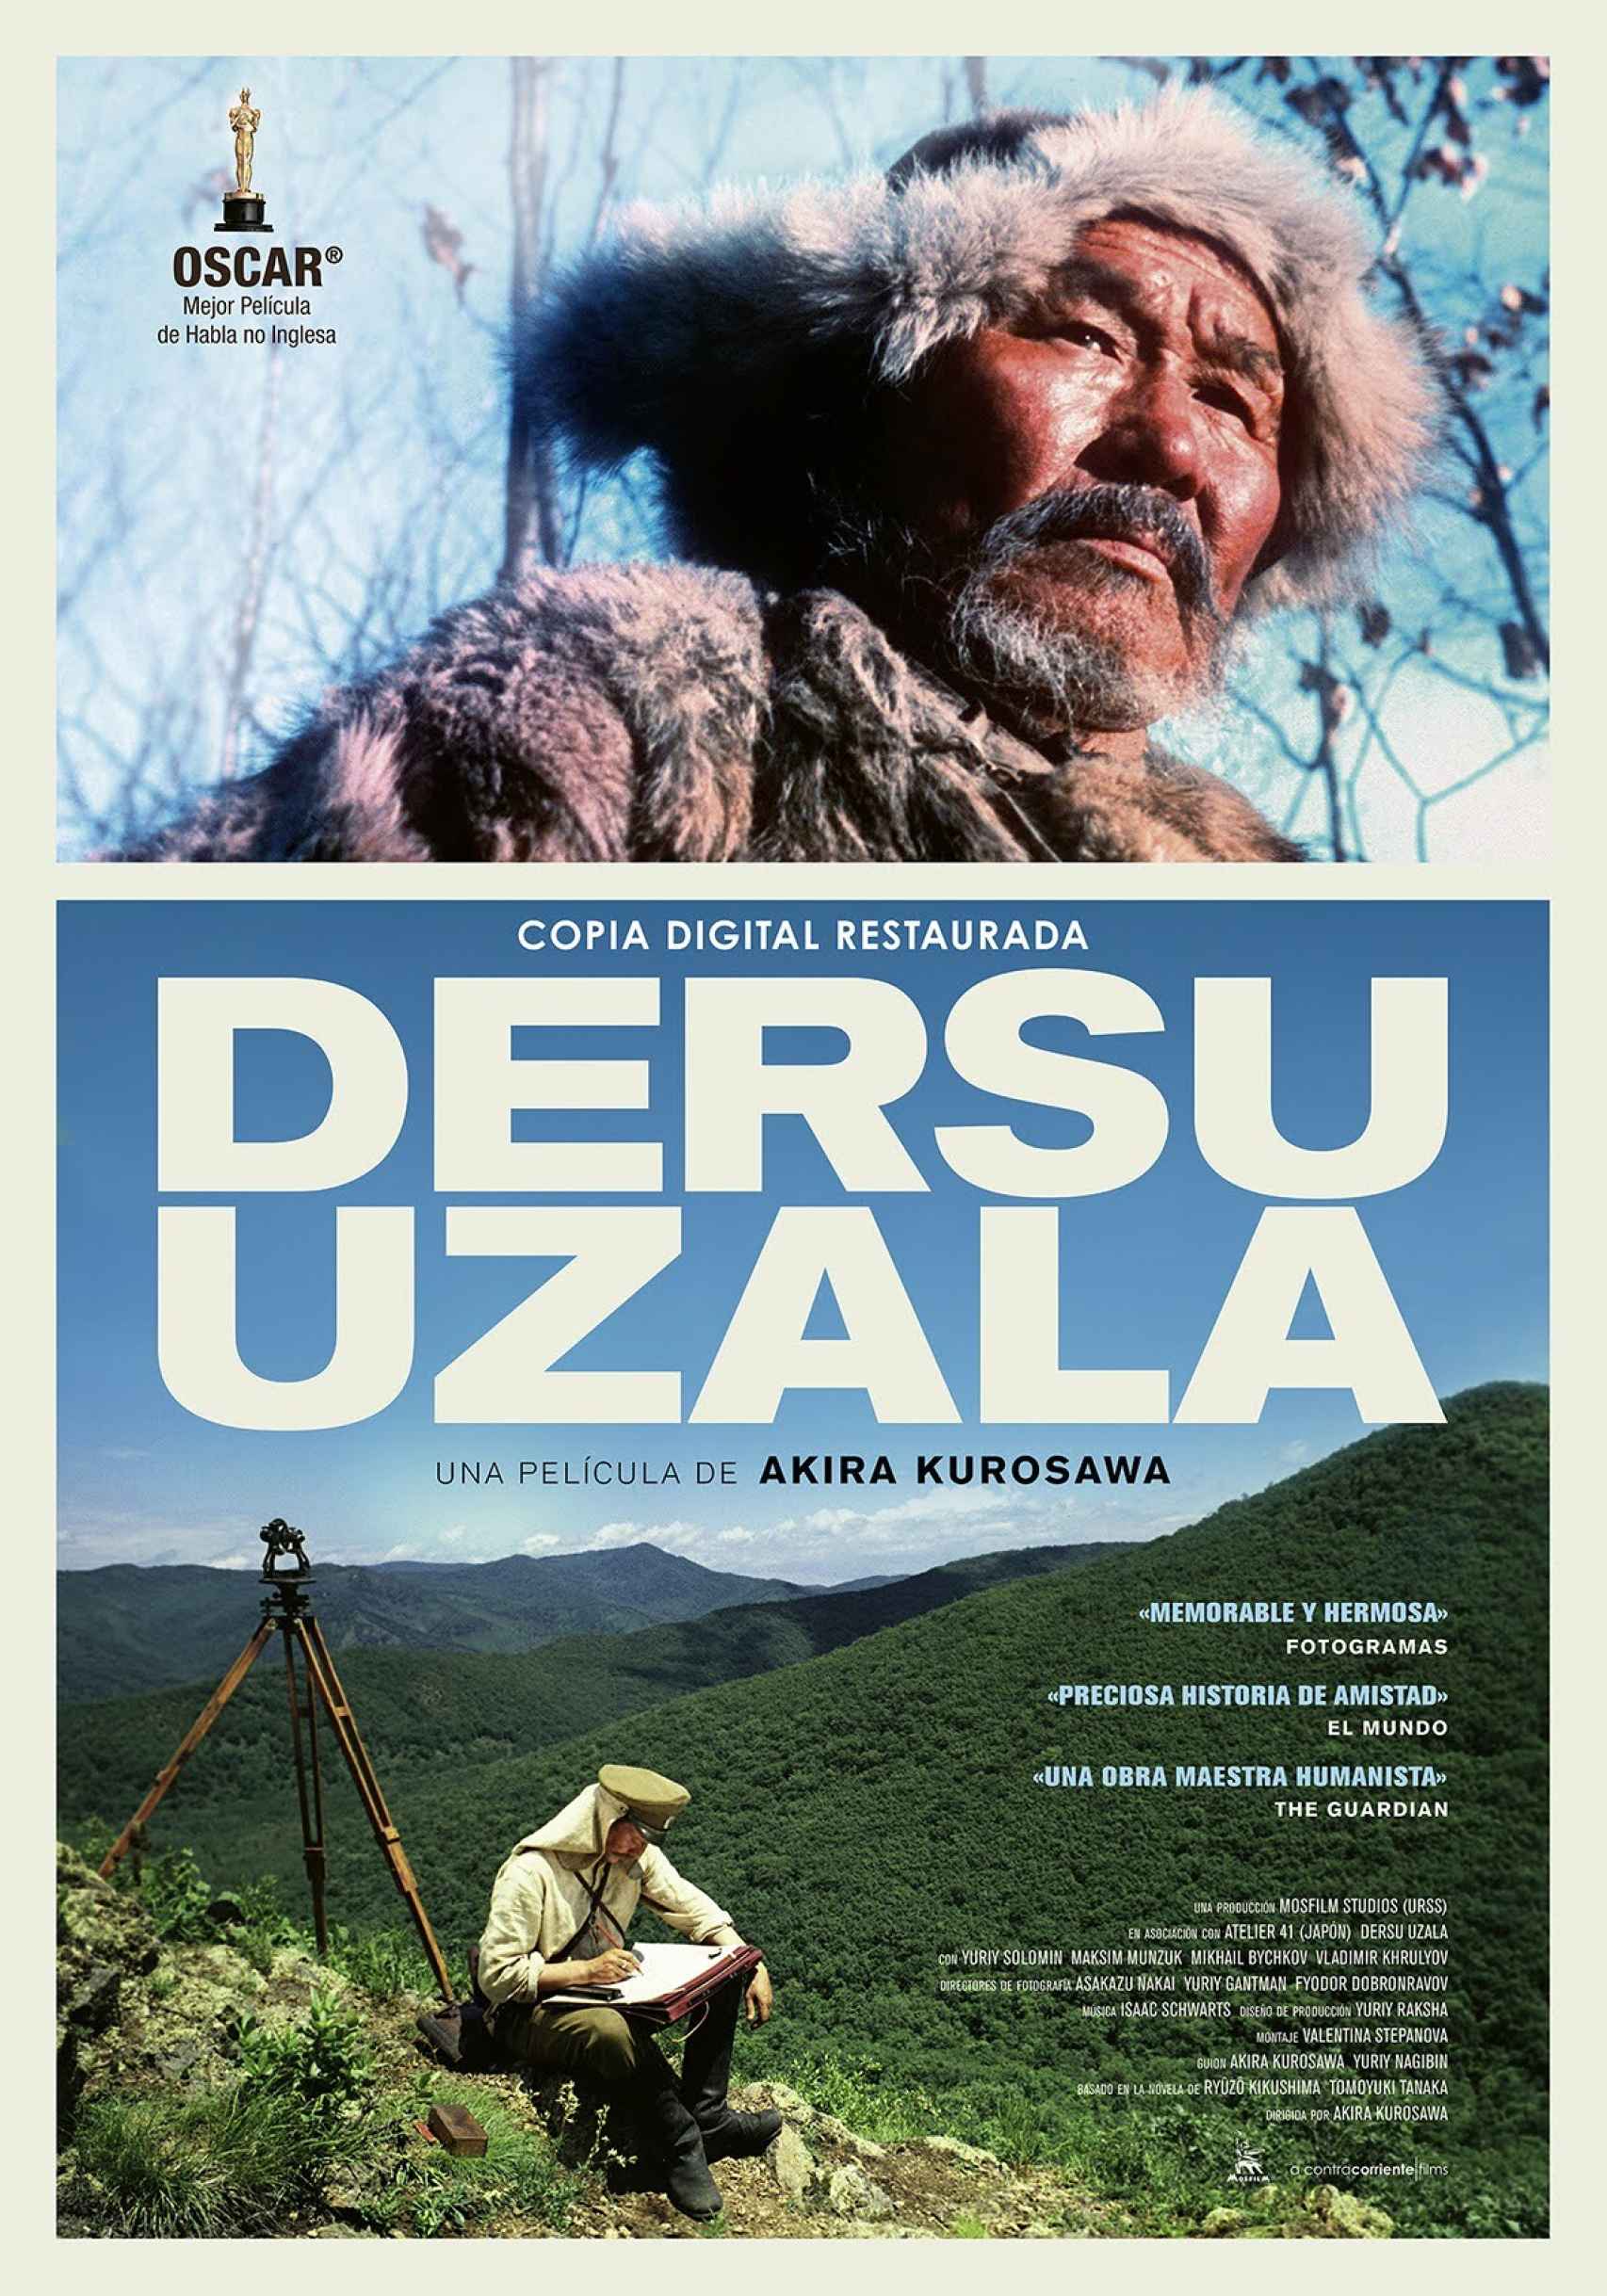 Cartel promocional de 'Dersu Uzala' creado por A Contracorriente Films